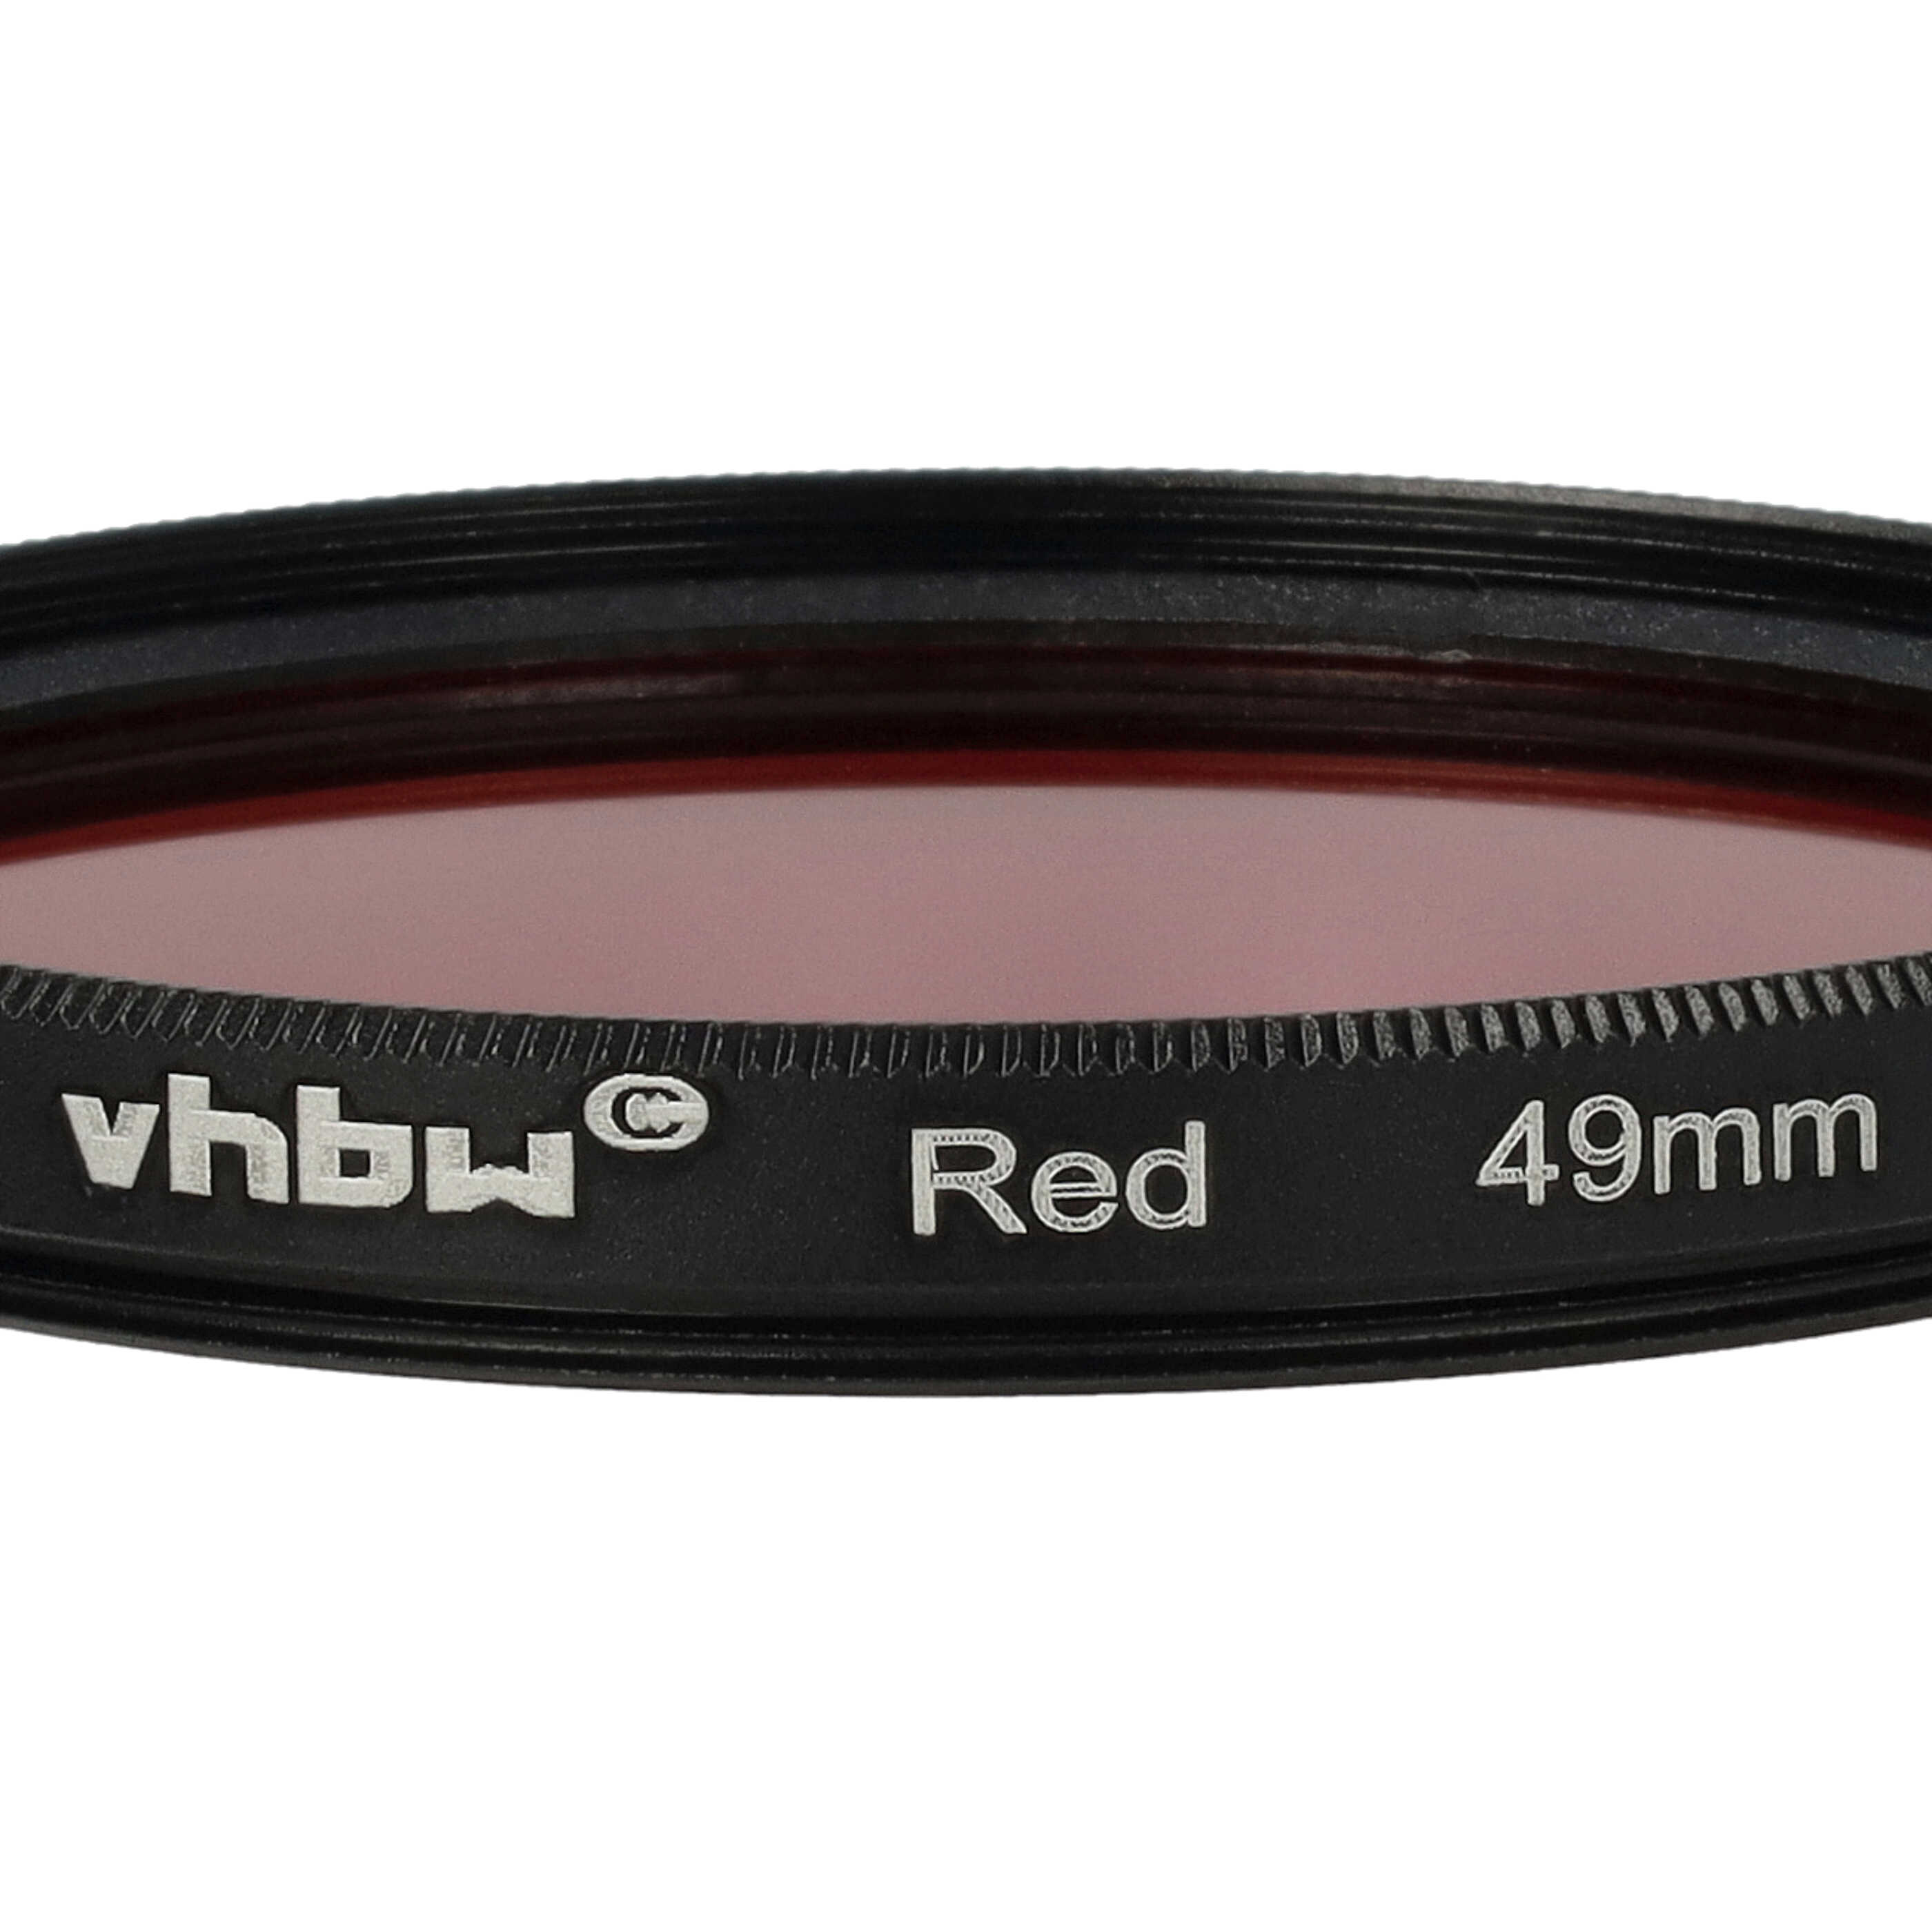 Filtre de couleur rouge pour objectifs d'appareils photo de 49 mm - Filtre rouge